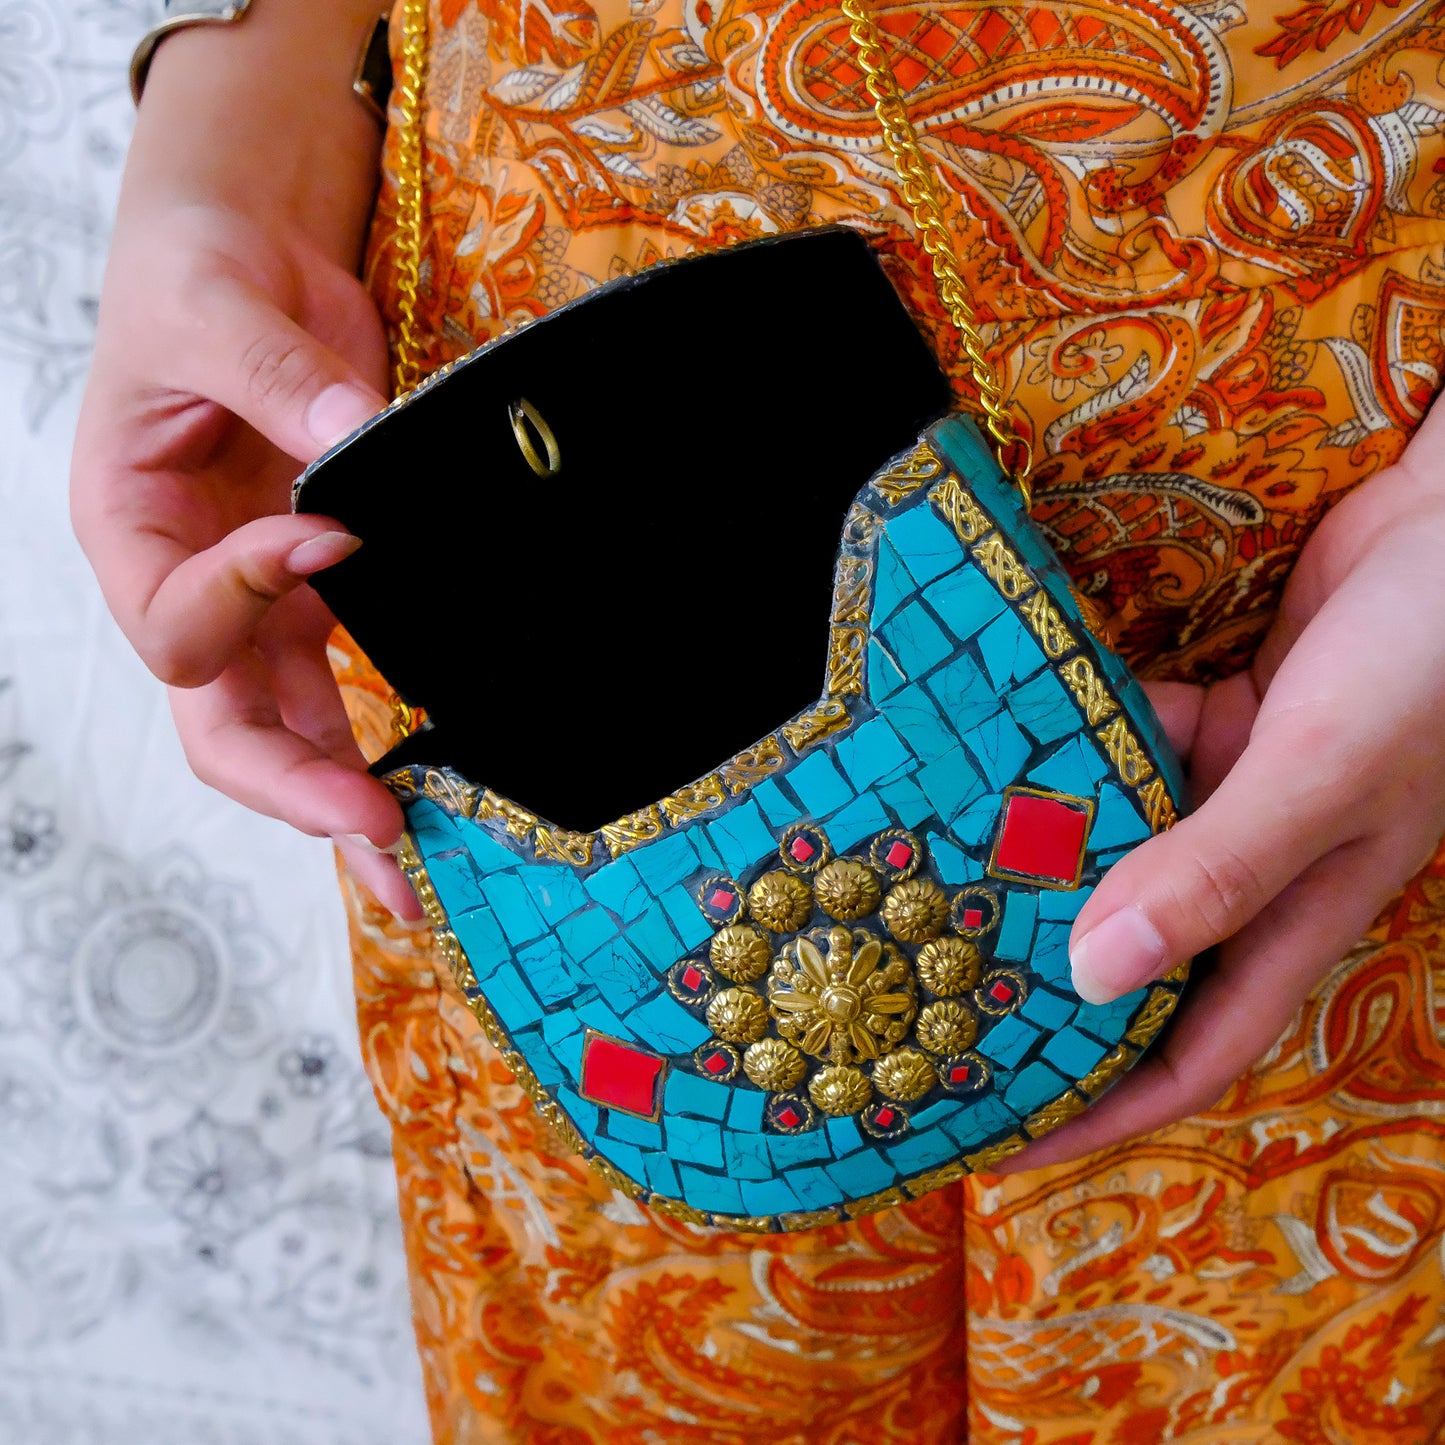 Boho Mosaic Handmade Sling Bag